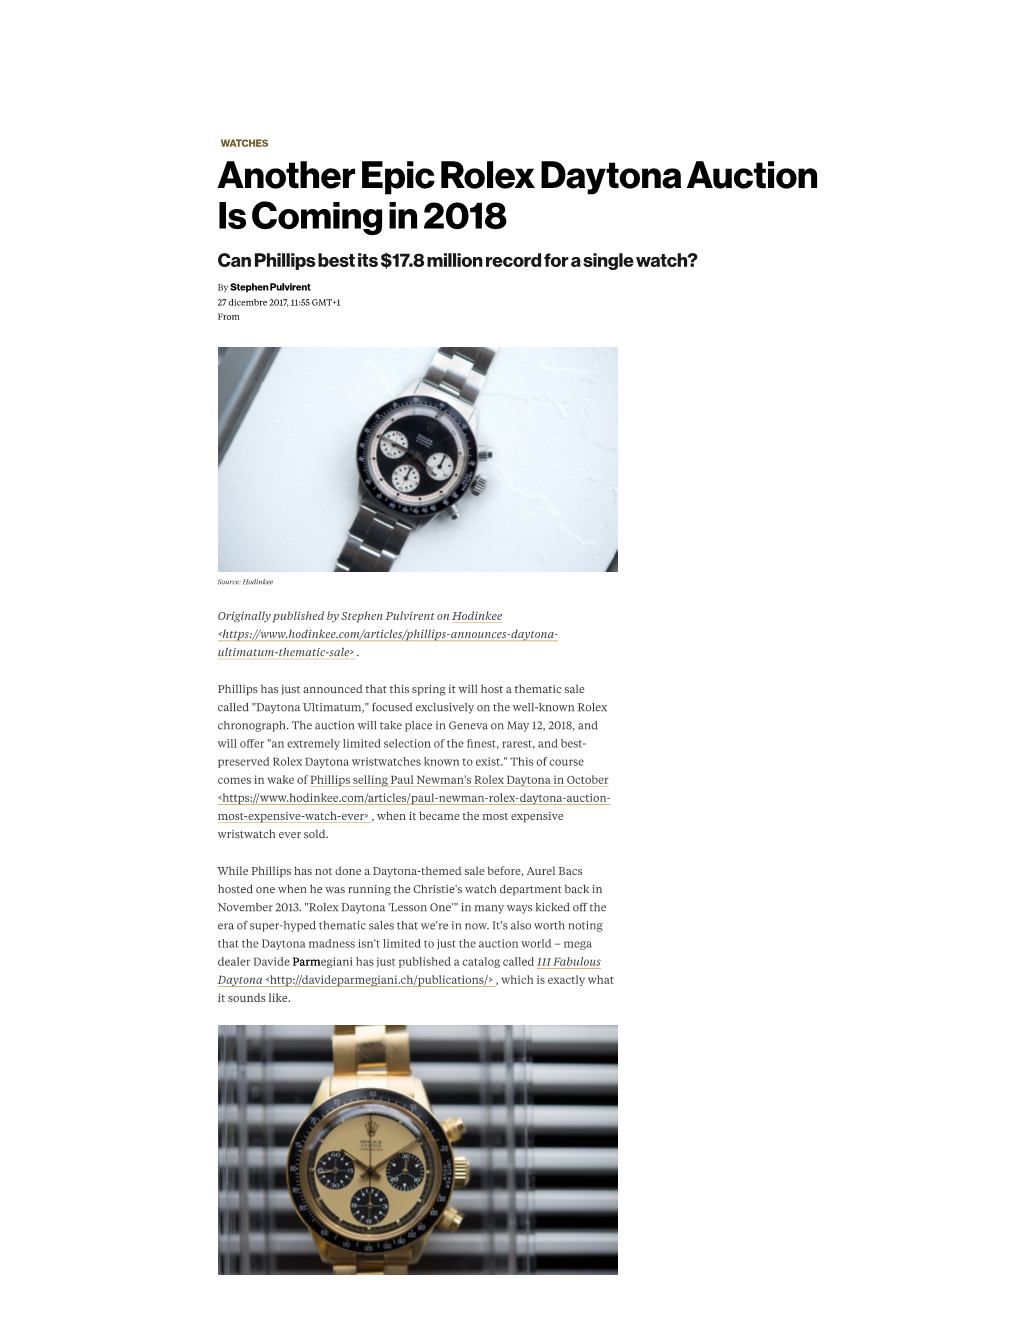 Phillips Daytona Ultimatum Auction Set for Spring 2018